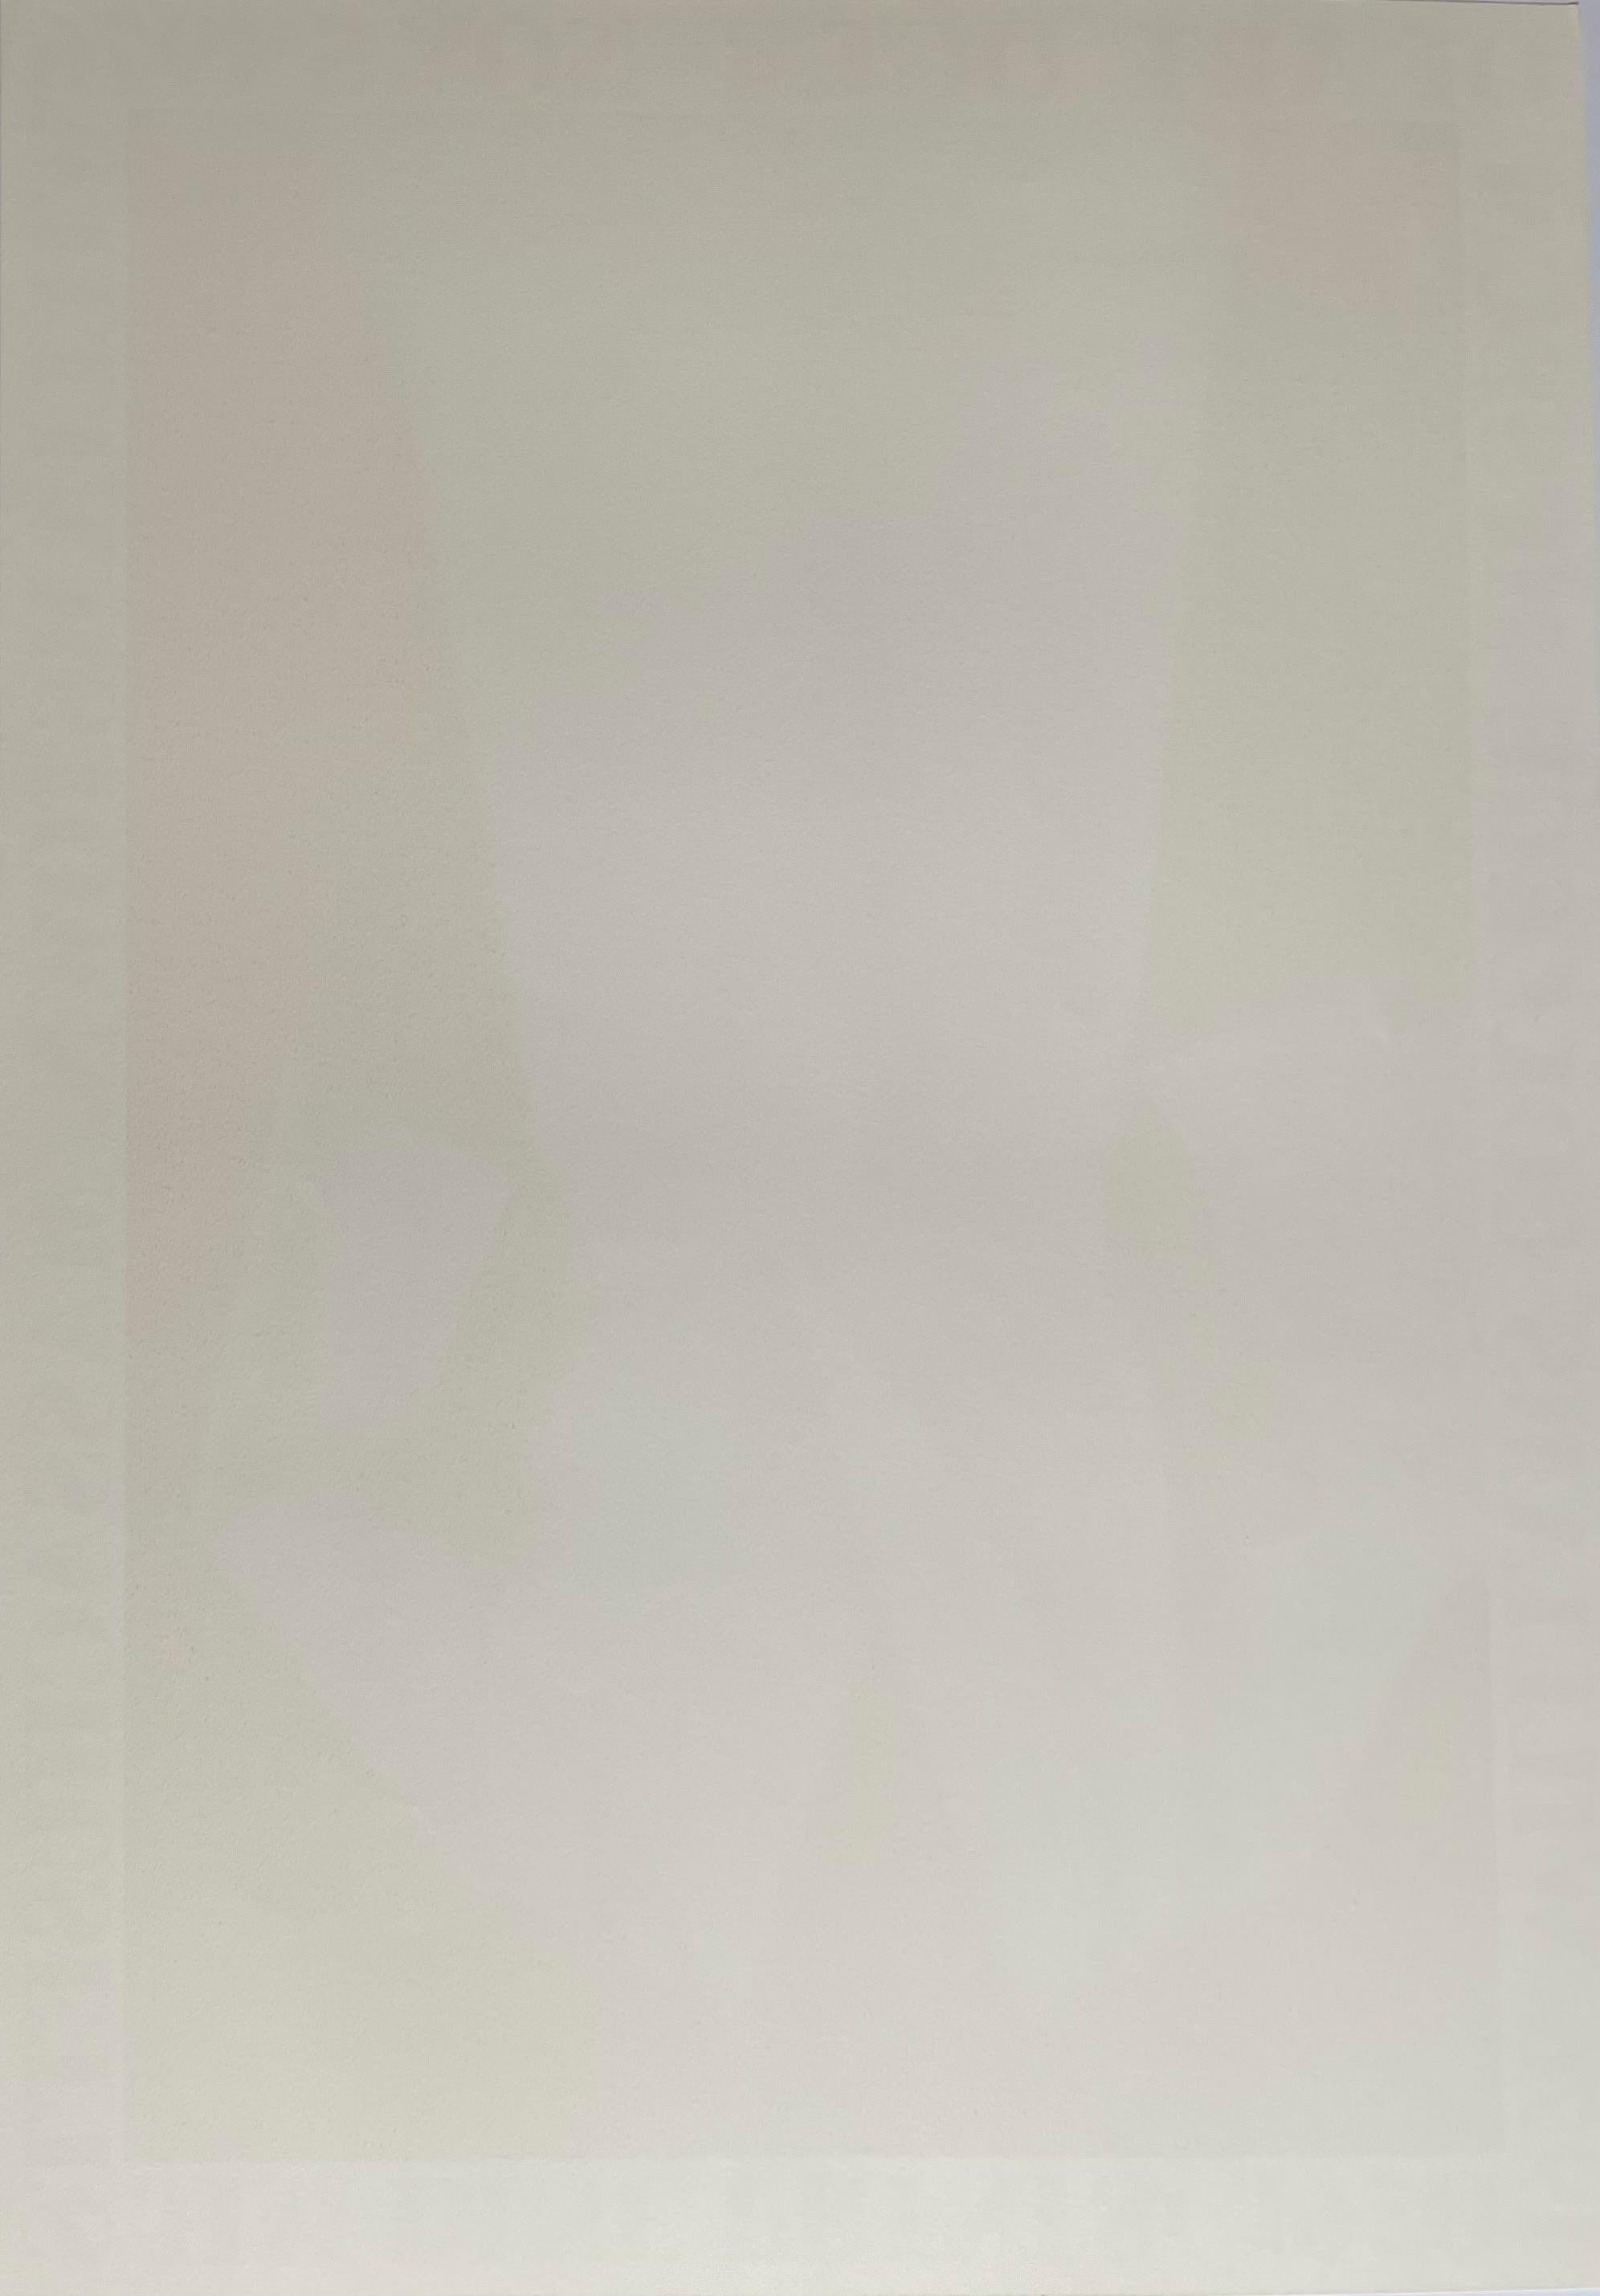 Jim Dine
Affiche du musée du Williams College, édition limitée, 1976
Affiche lithographiée en offset sur papier vélin blanc cassé
Edition limitée à 300 exemplaires 
Publié par Pace Editions, avec copyright
GRAND : 37 x 22 pouces
(cette œuvre est